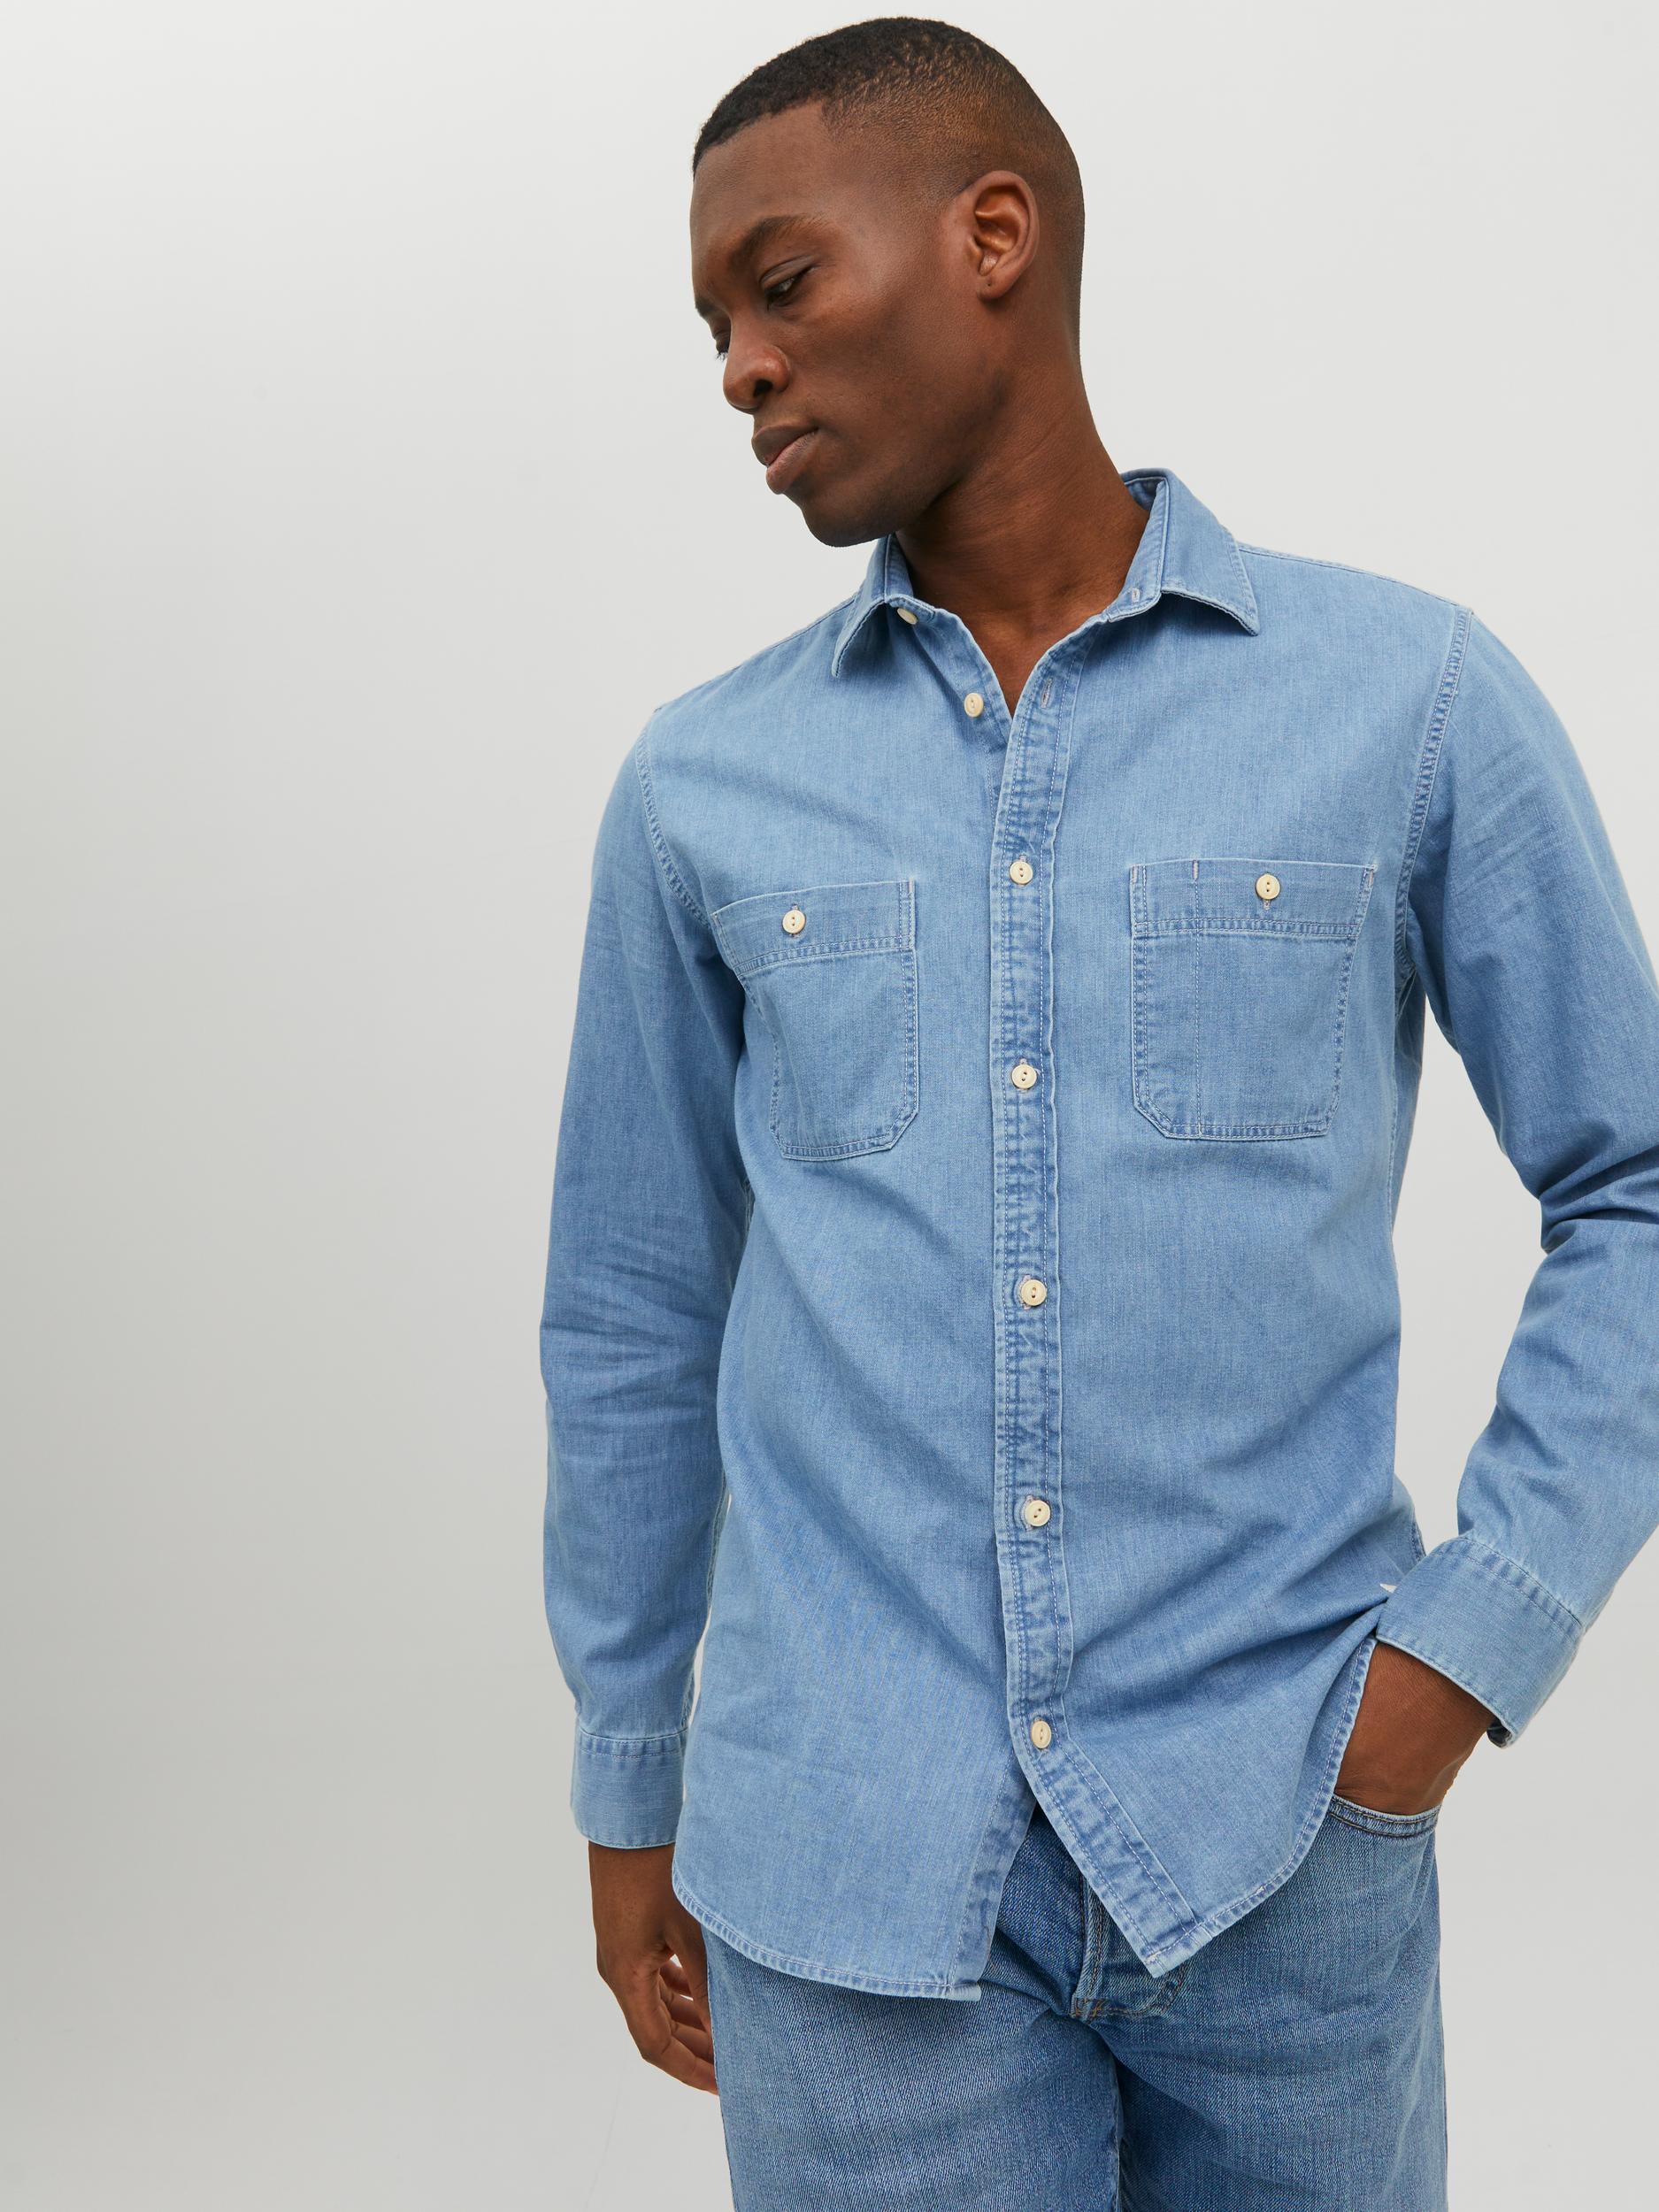 Men's Jaxon Light Blue Denim Long Sleeve Shirt-Front View